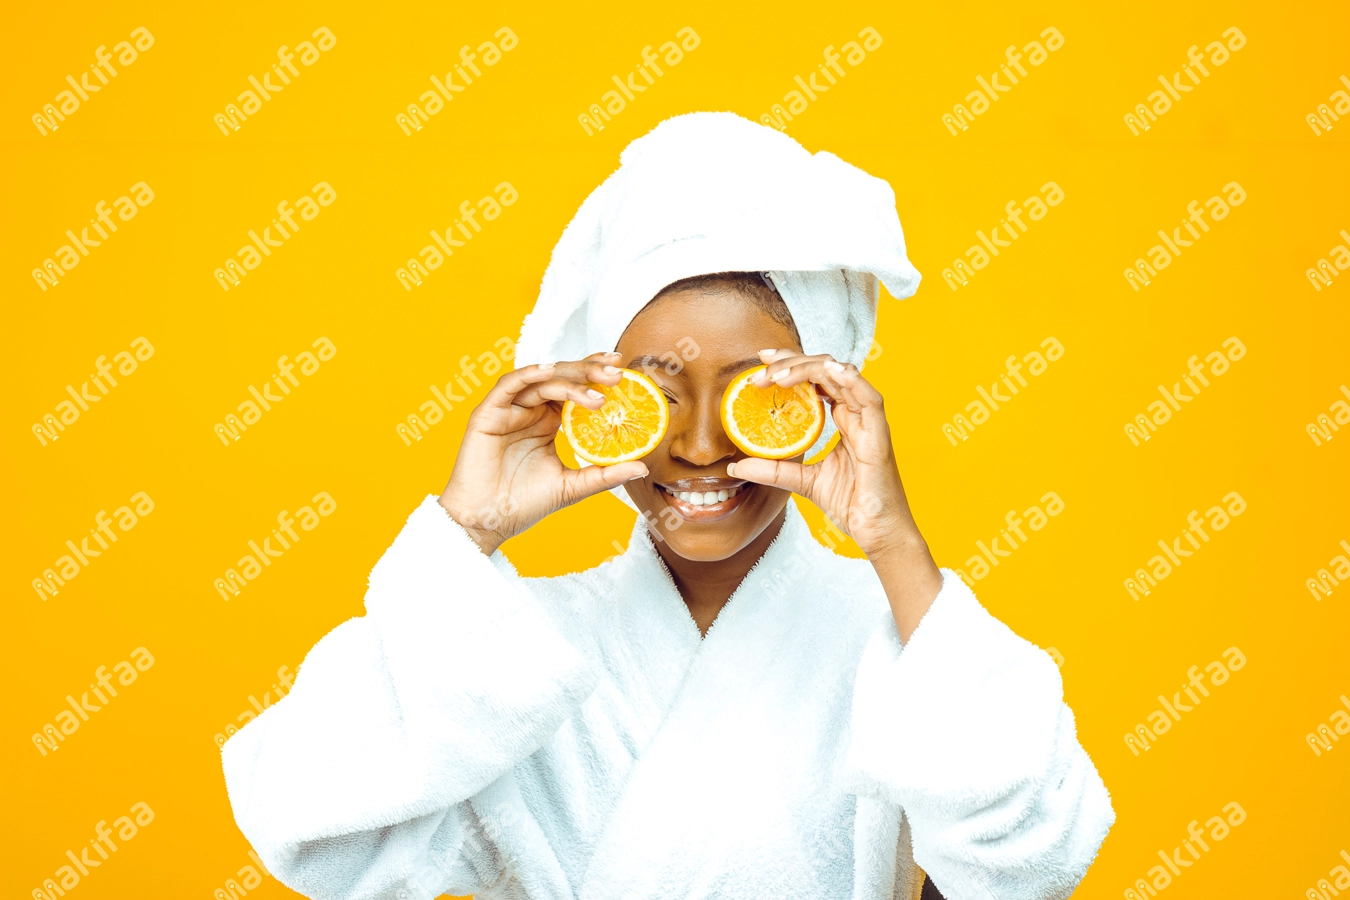 femme en peignoir blanc posant des oranges sur les yeux